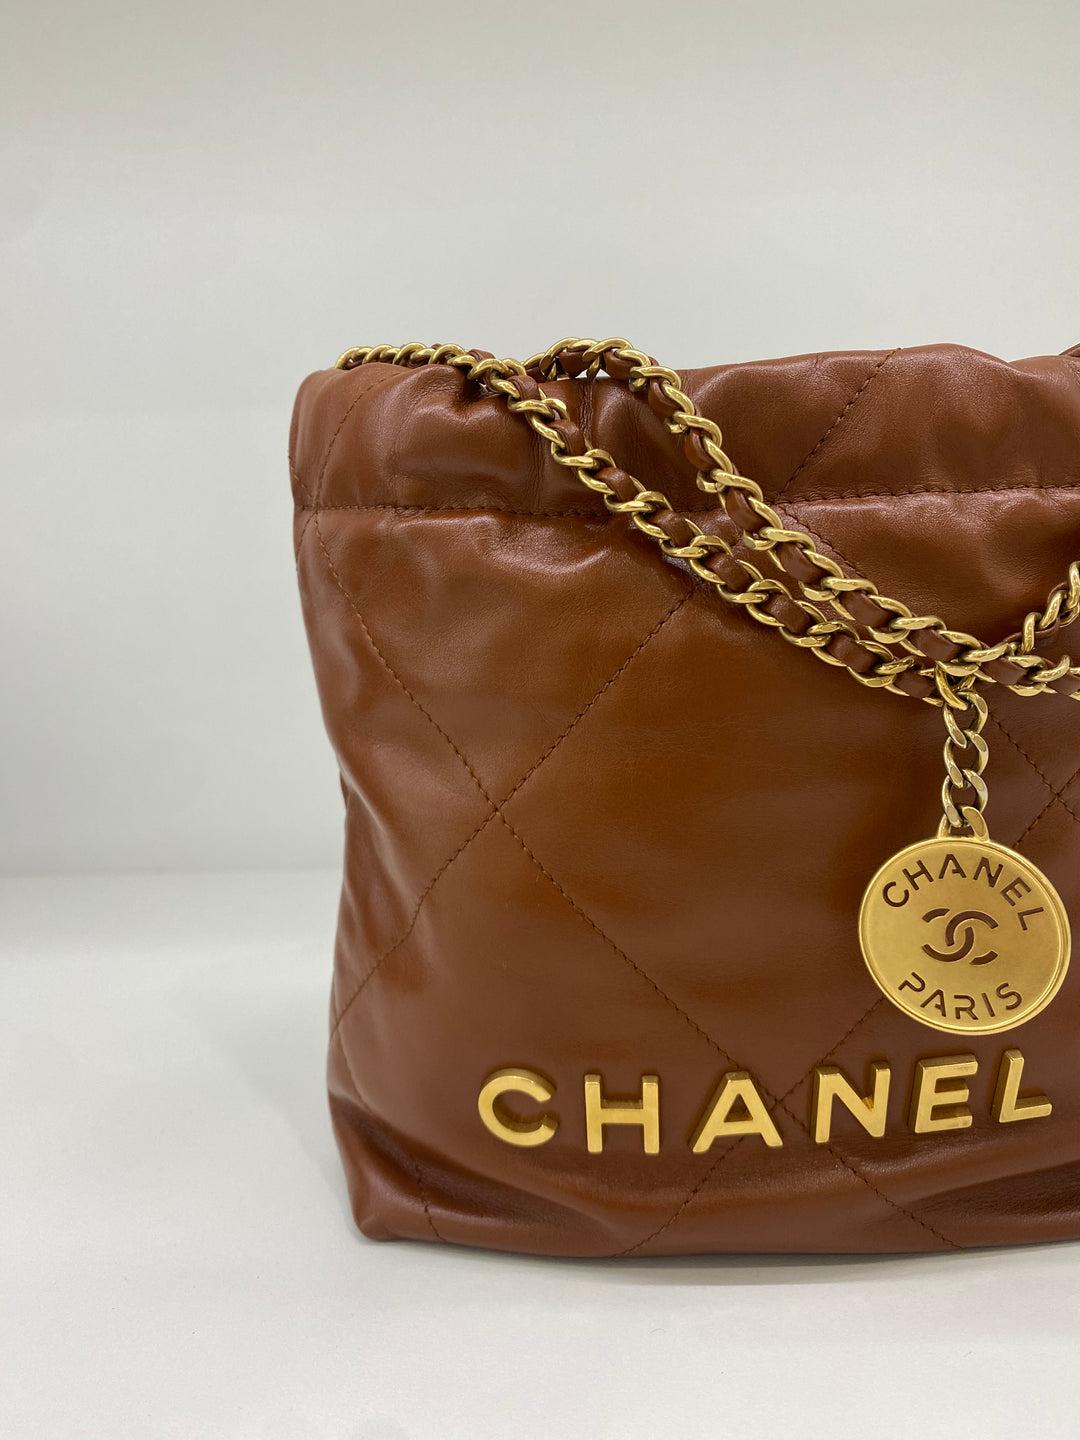 Diese elegante Chanel 22 Bag Mini ist ein zeitloser Klassiker, der aus feinstem gestepptem Leder gefertigt ist. Seine zeitlose Silhouette begleitet Sie vom Tag bis zum Abend und verleiht jedem Ensemble einen Hauch von Raffinesse. Mit seinen